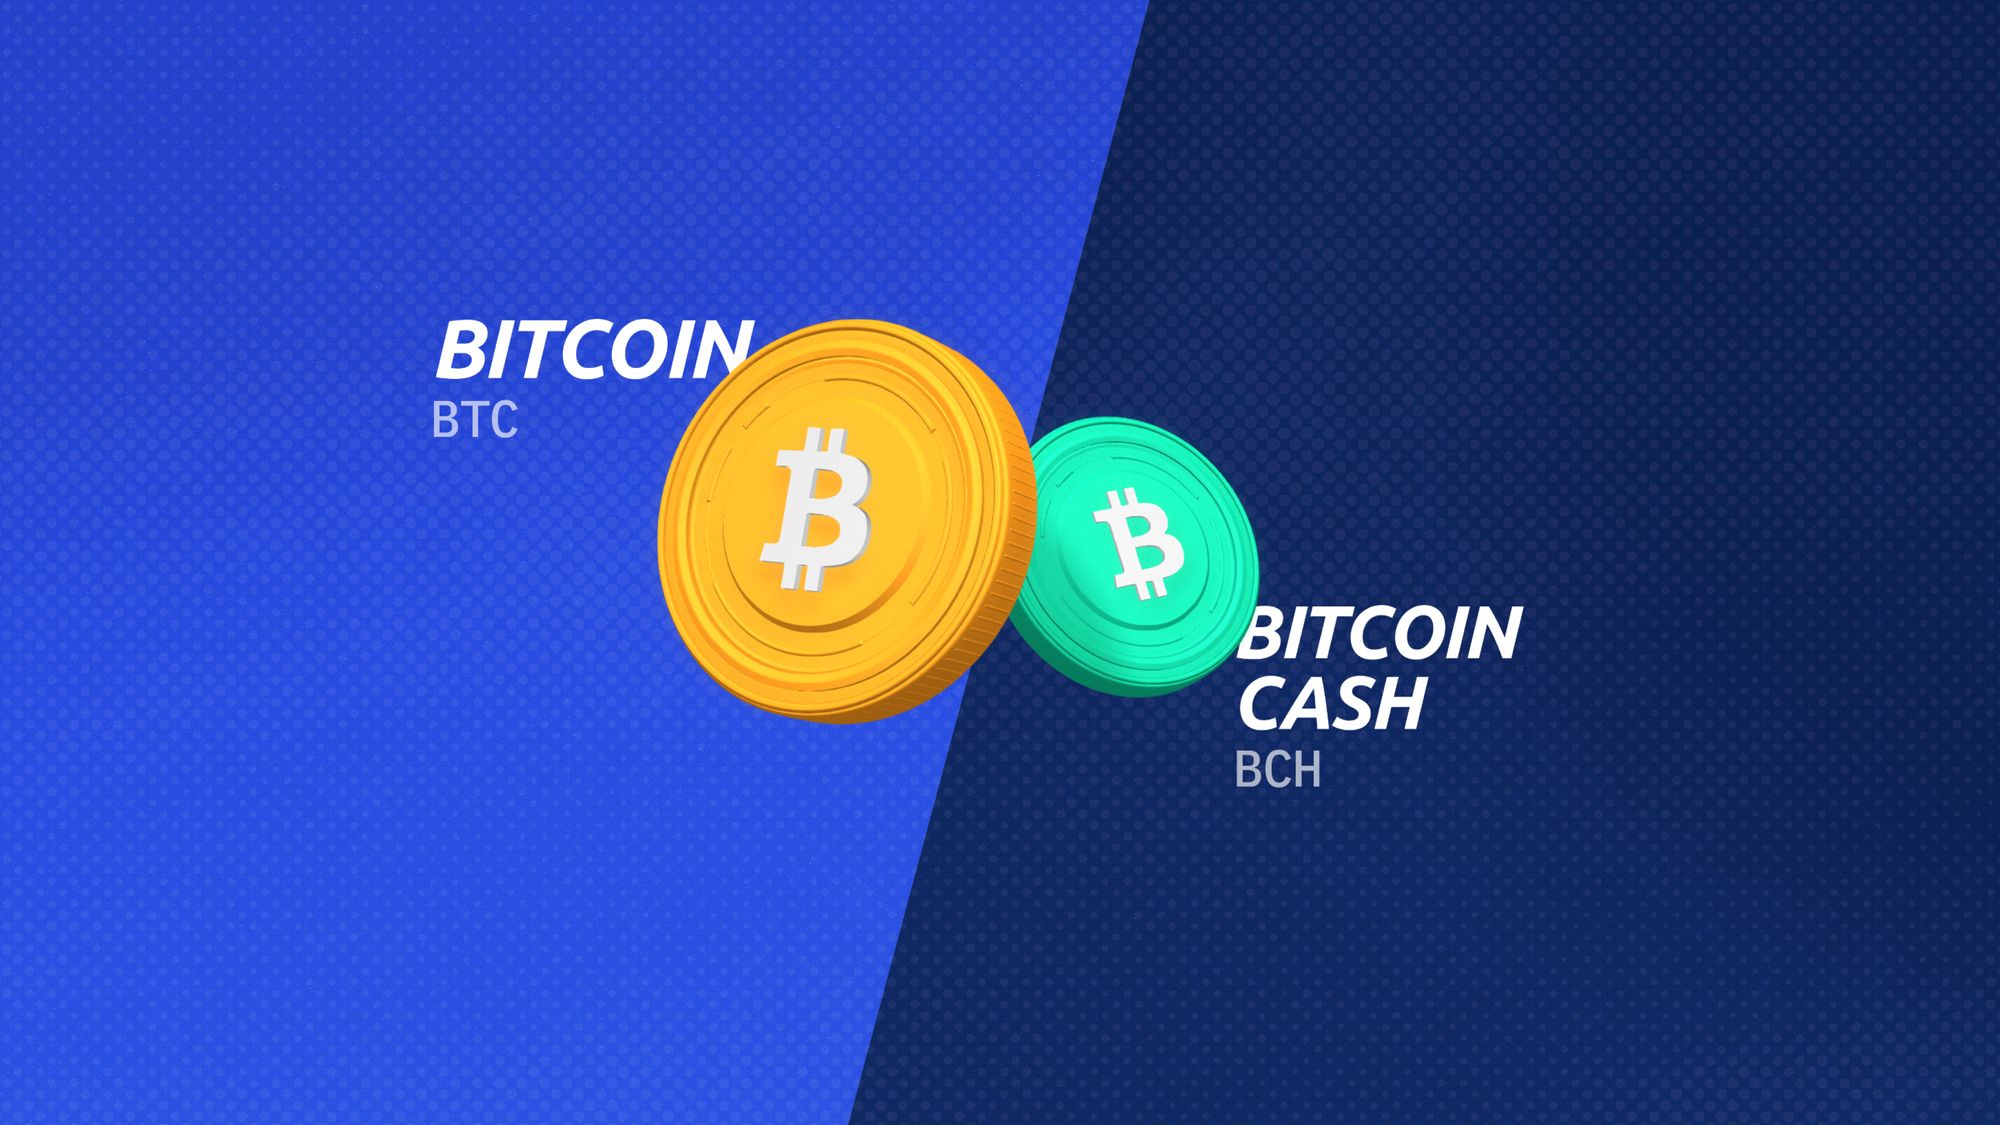 Bitcoin (BTC) проти Bitcoin Cash (BCH): вивчення відмінностей у походженні, варіантах використання та інвестиційному потенціалі